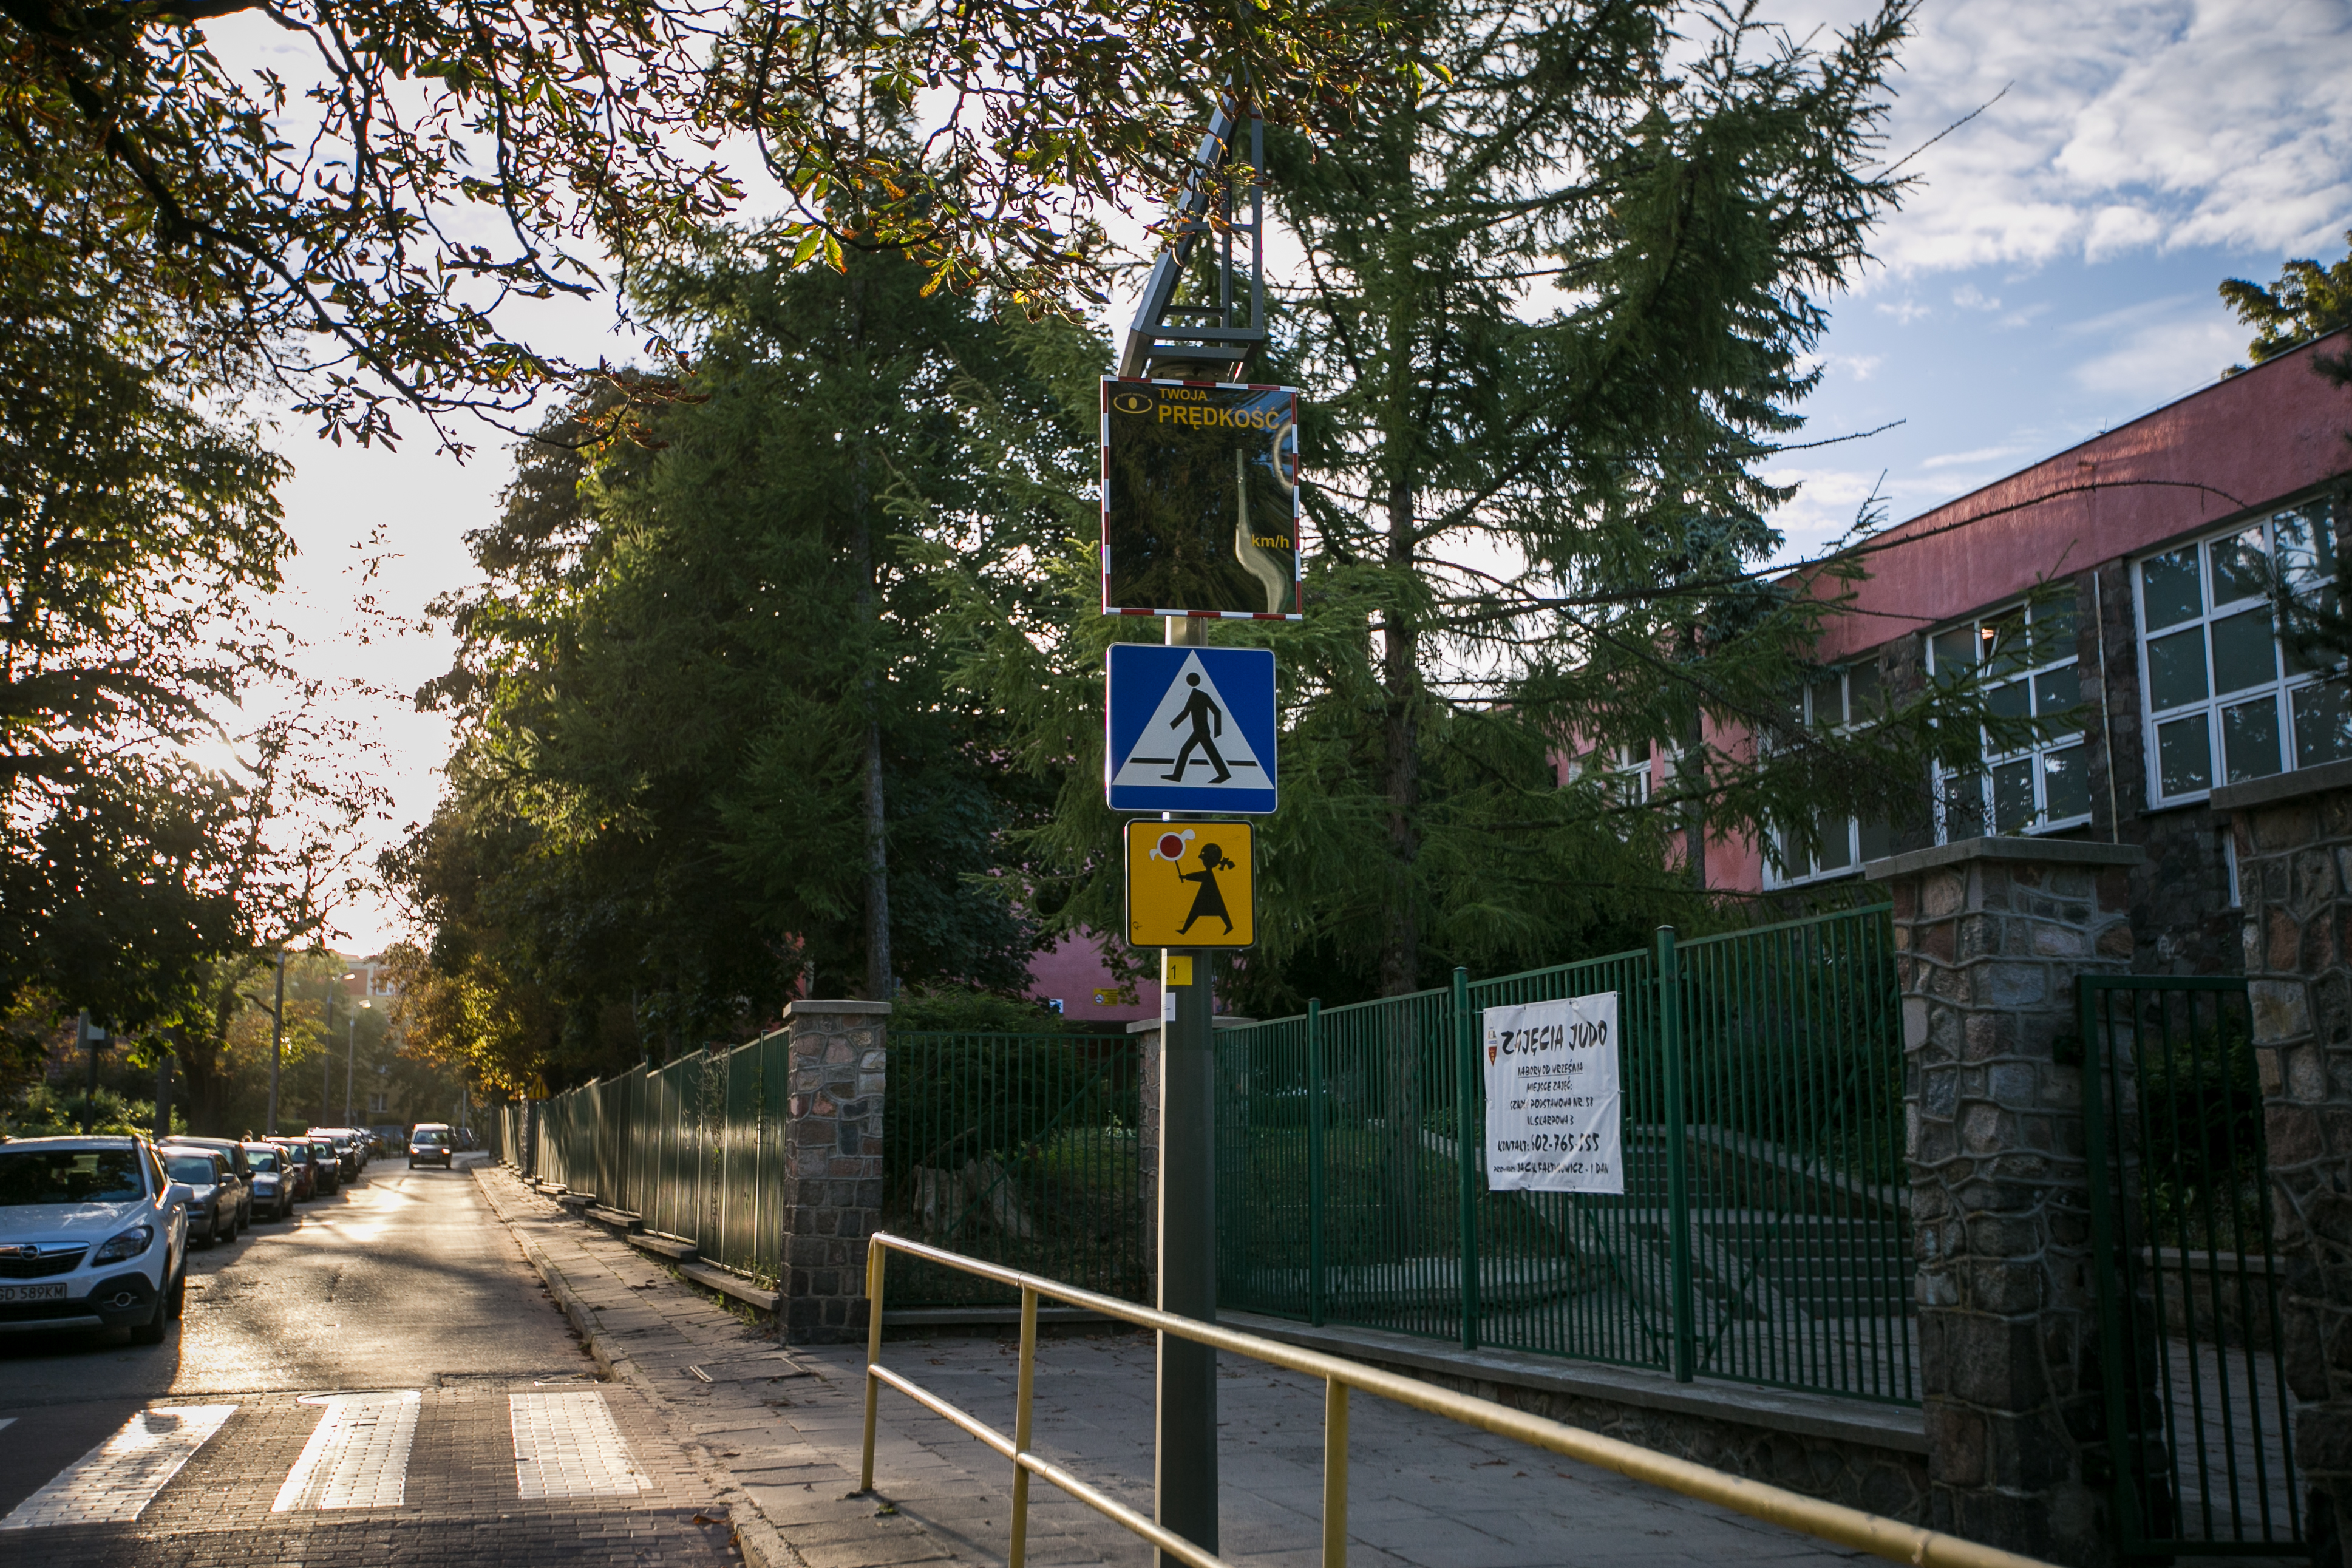 tablica radarowa umieszczona nad znakami drogowymi informującymi o przejściu dla pieszych